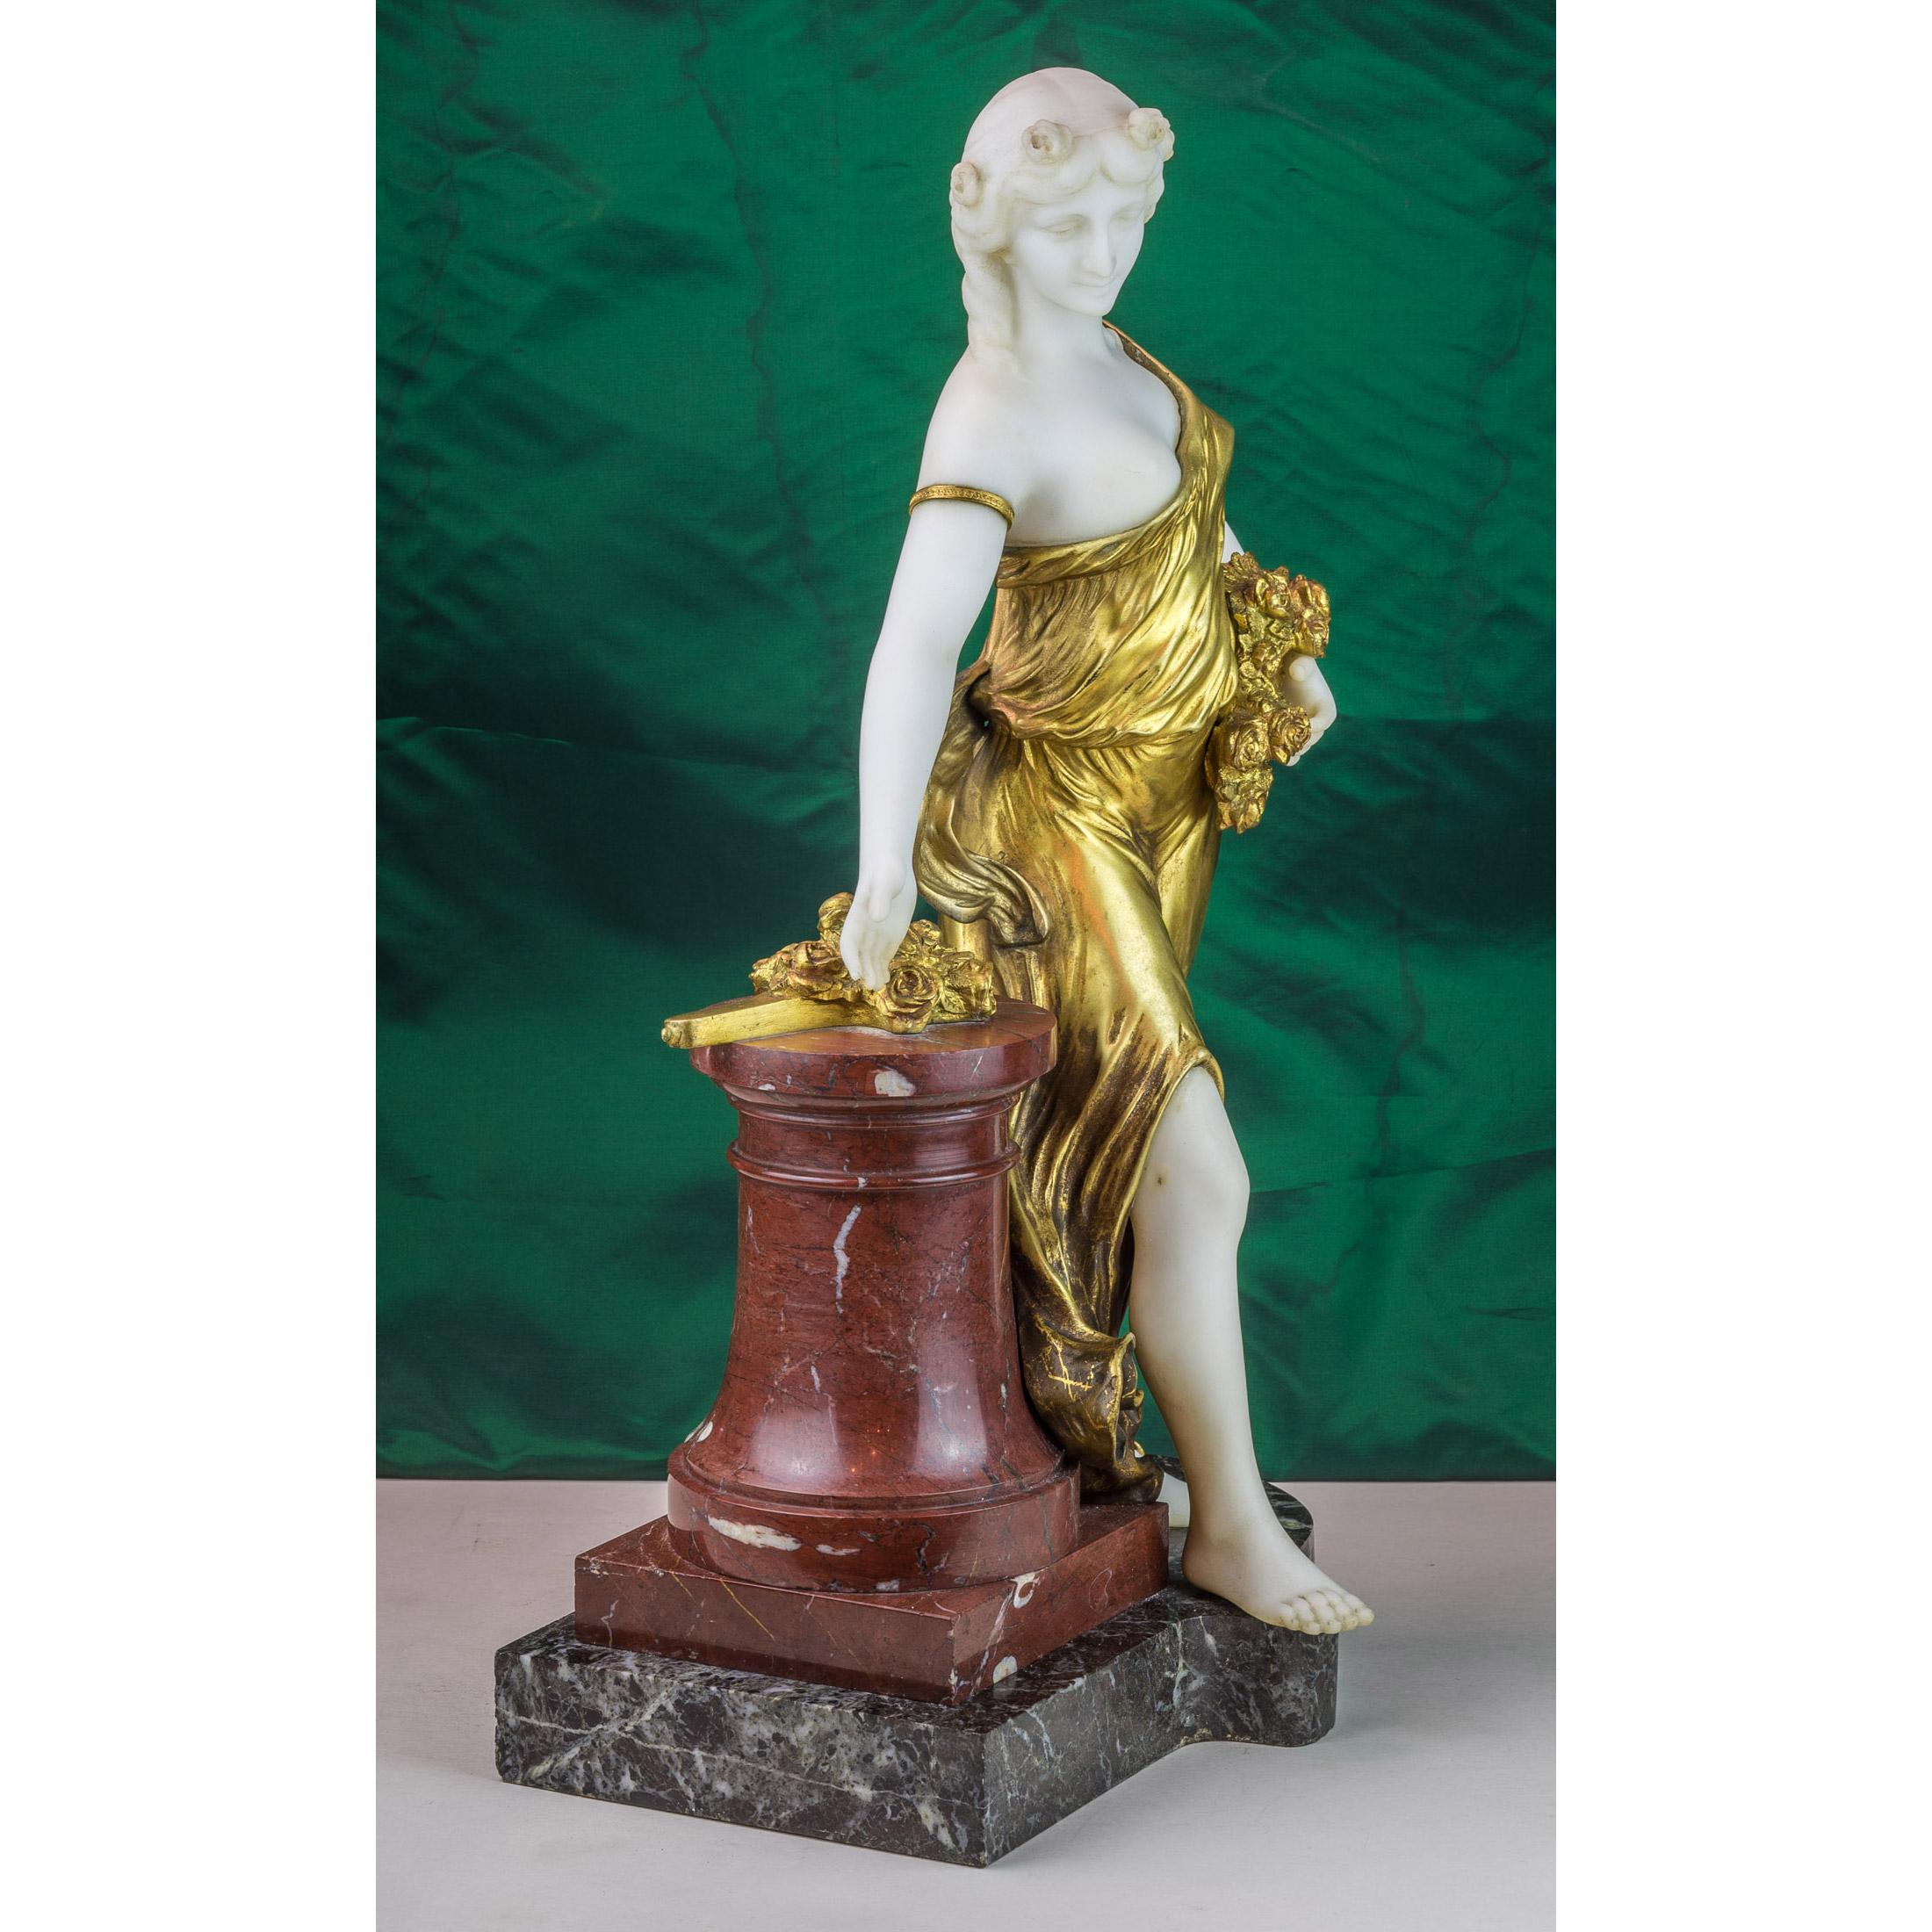 Exquise figure en bronze et marbre d'une femme avec des fleurs par H. Fugère.
En robe de bronze doré, appuyée sur une colonne de marbre, des fleurs à la main, sur un socle de marbre façonné.
Artiste : Henri Fugère (1872-1944)
Date : vers